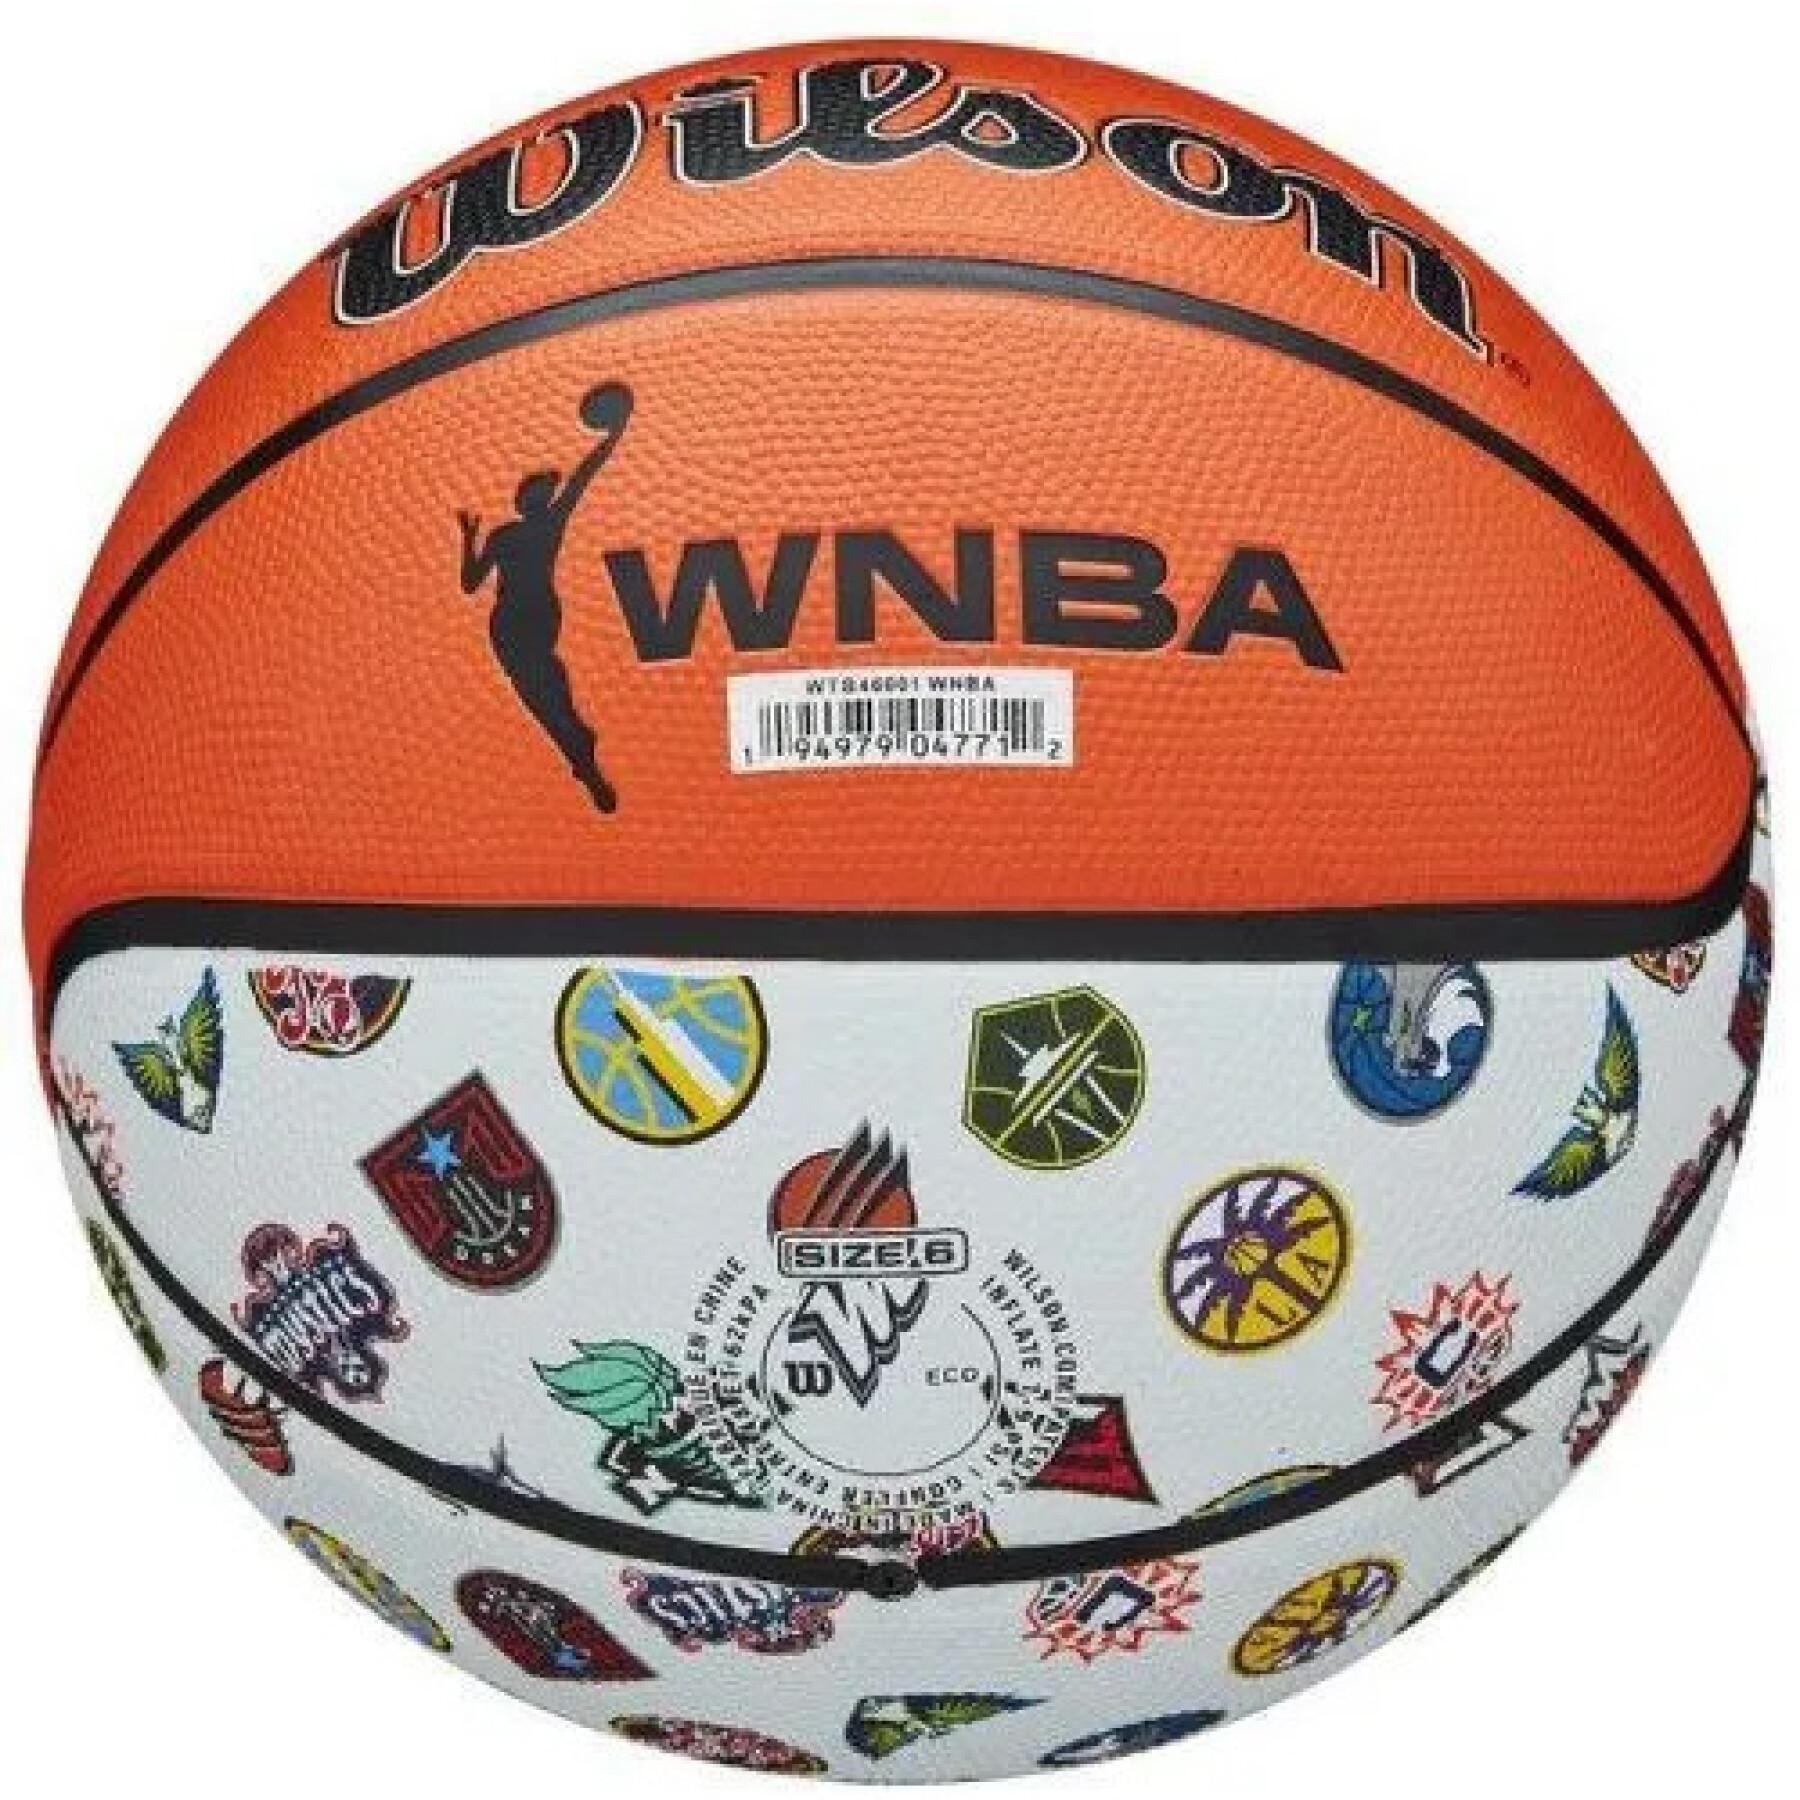 Women's Basketball Wilson WNBA All Team